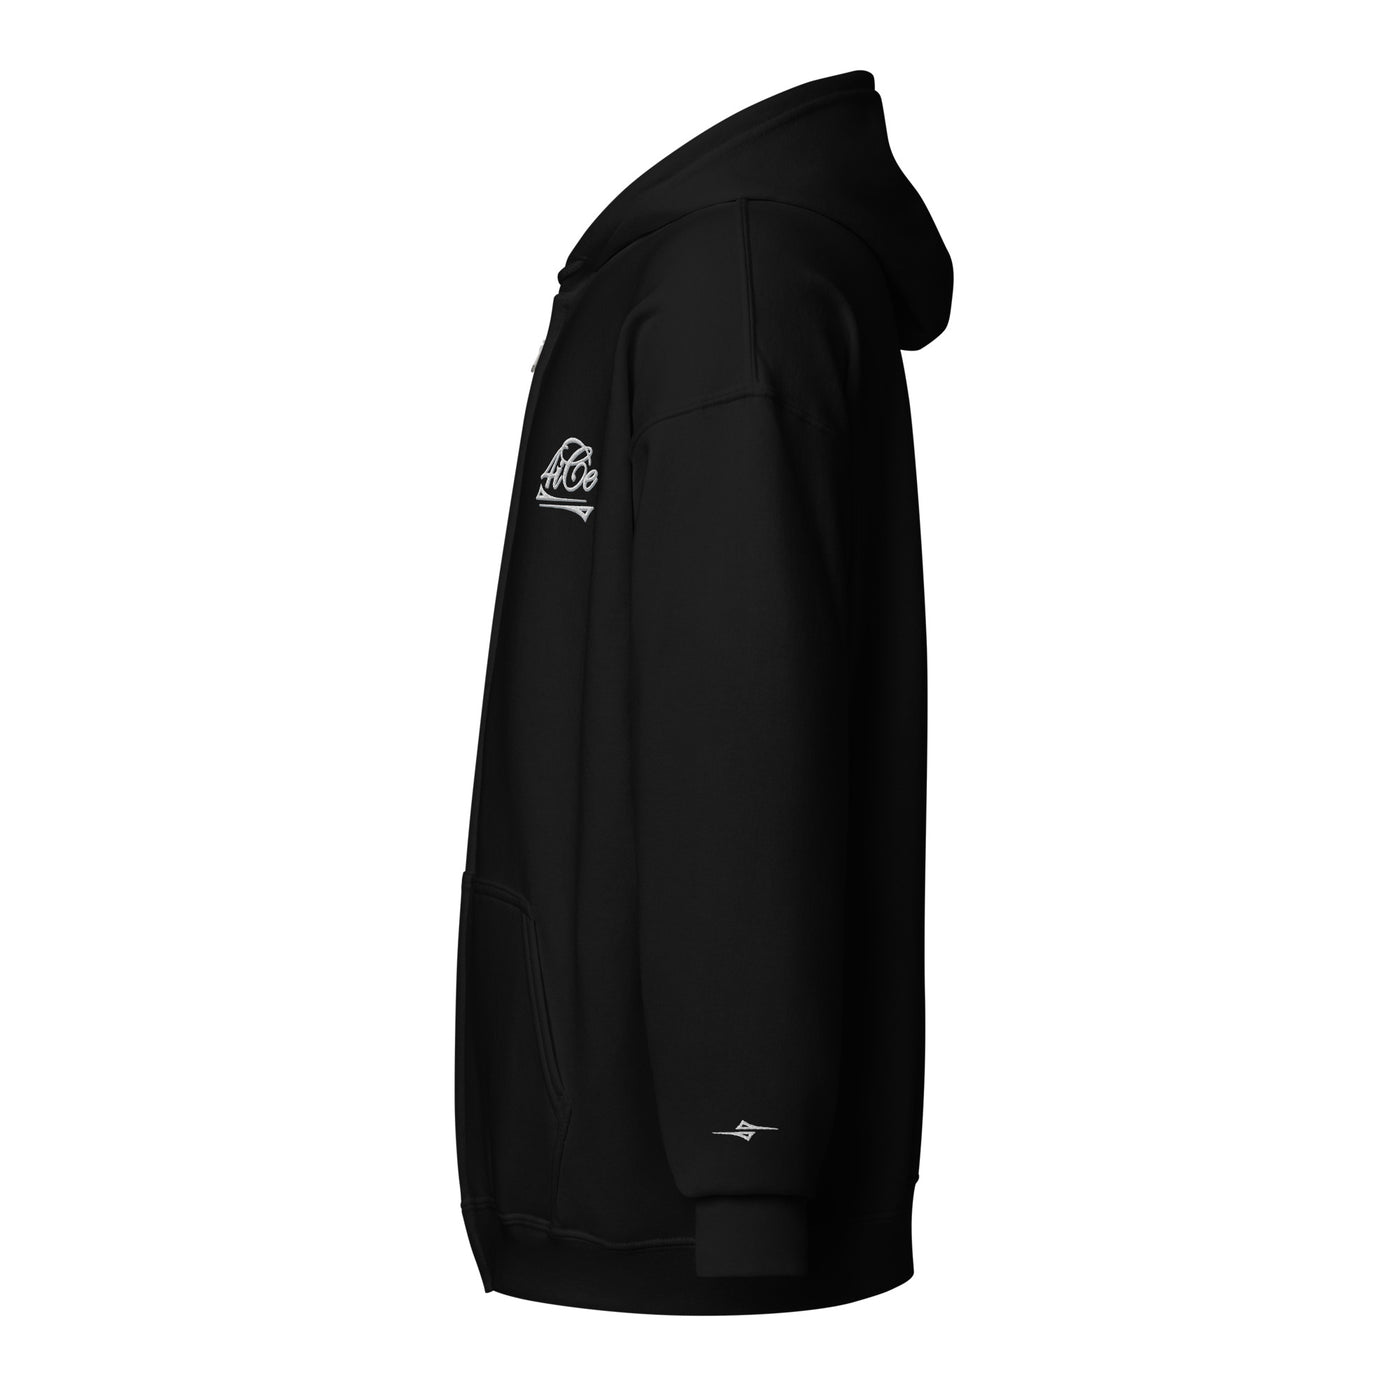  4iCe® Elite Boxing zip hoodie black left side